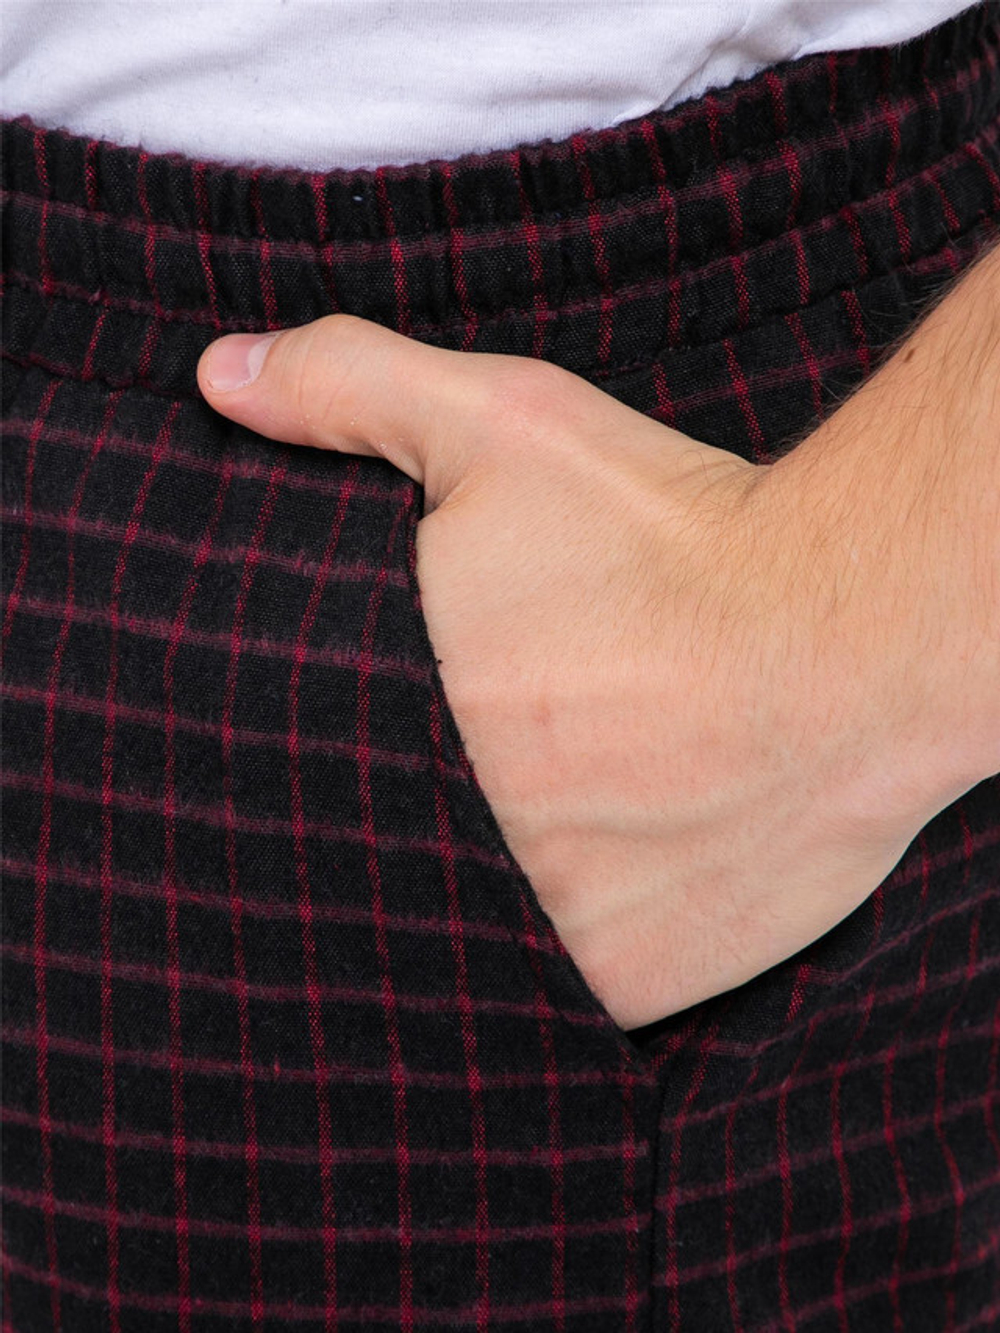 Мужские пижамные штаны для максимального комфорта - ШВЕЙНЫЕ детали, спортивный стиль и 100% хлопок - 09198